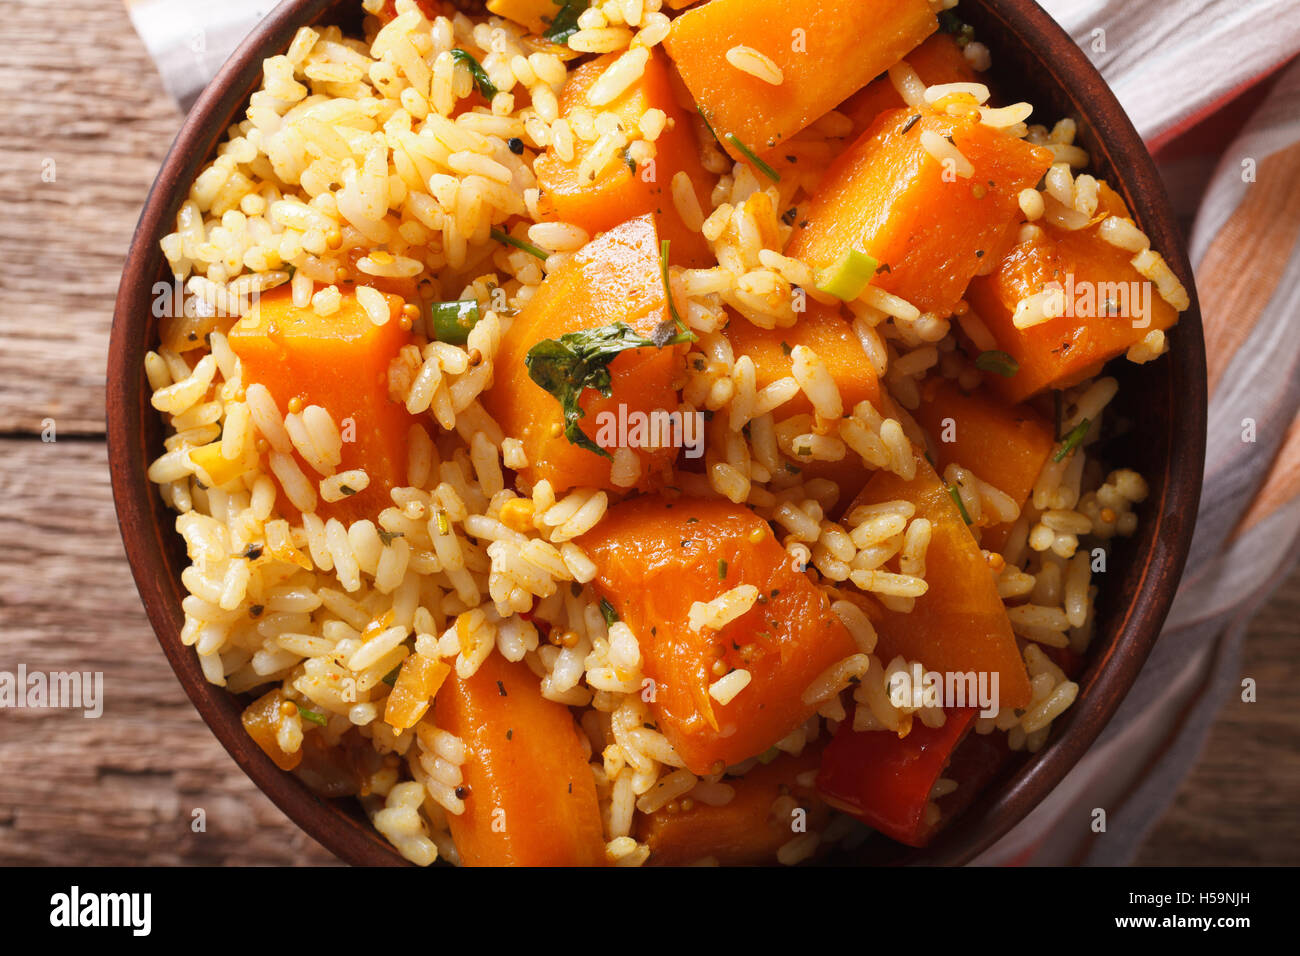 Cibo vegetariano: riso con la zucca in una ciotola vicino sul tavolo. Vista orizzontale dal di sopra Foto Stock